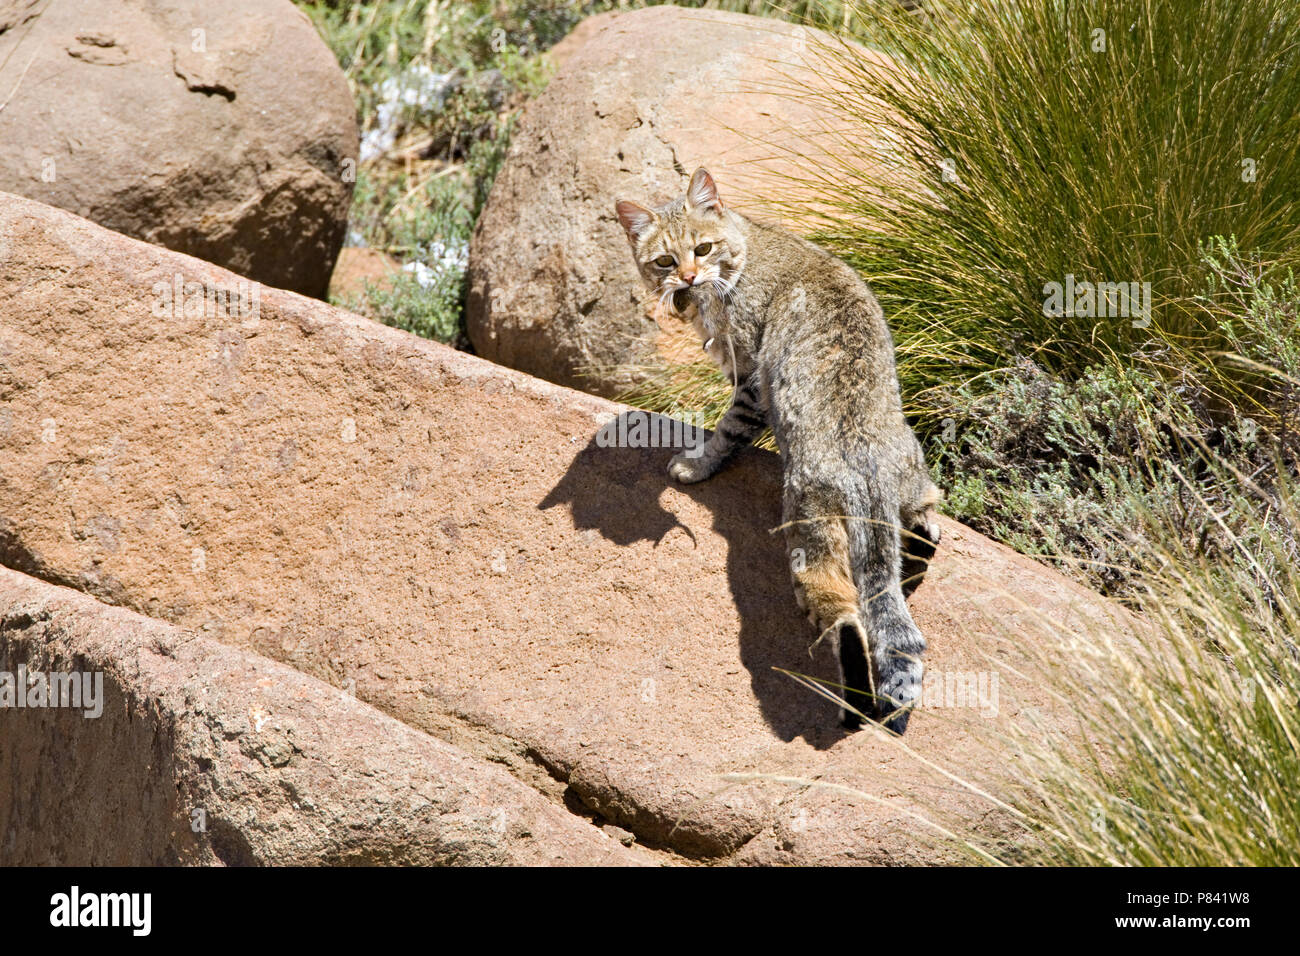 Afrikaanse Wilde Kat op een rots; African Wild Cat amongst rocks Stock Photo